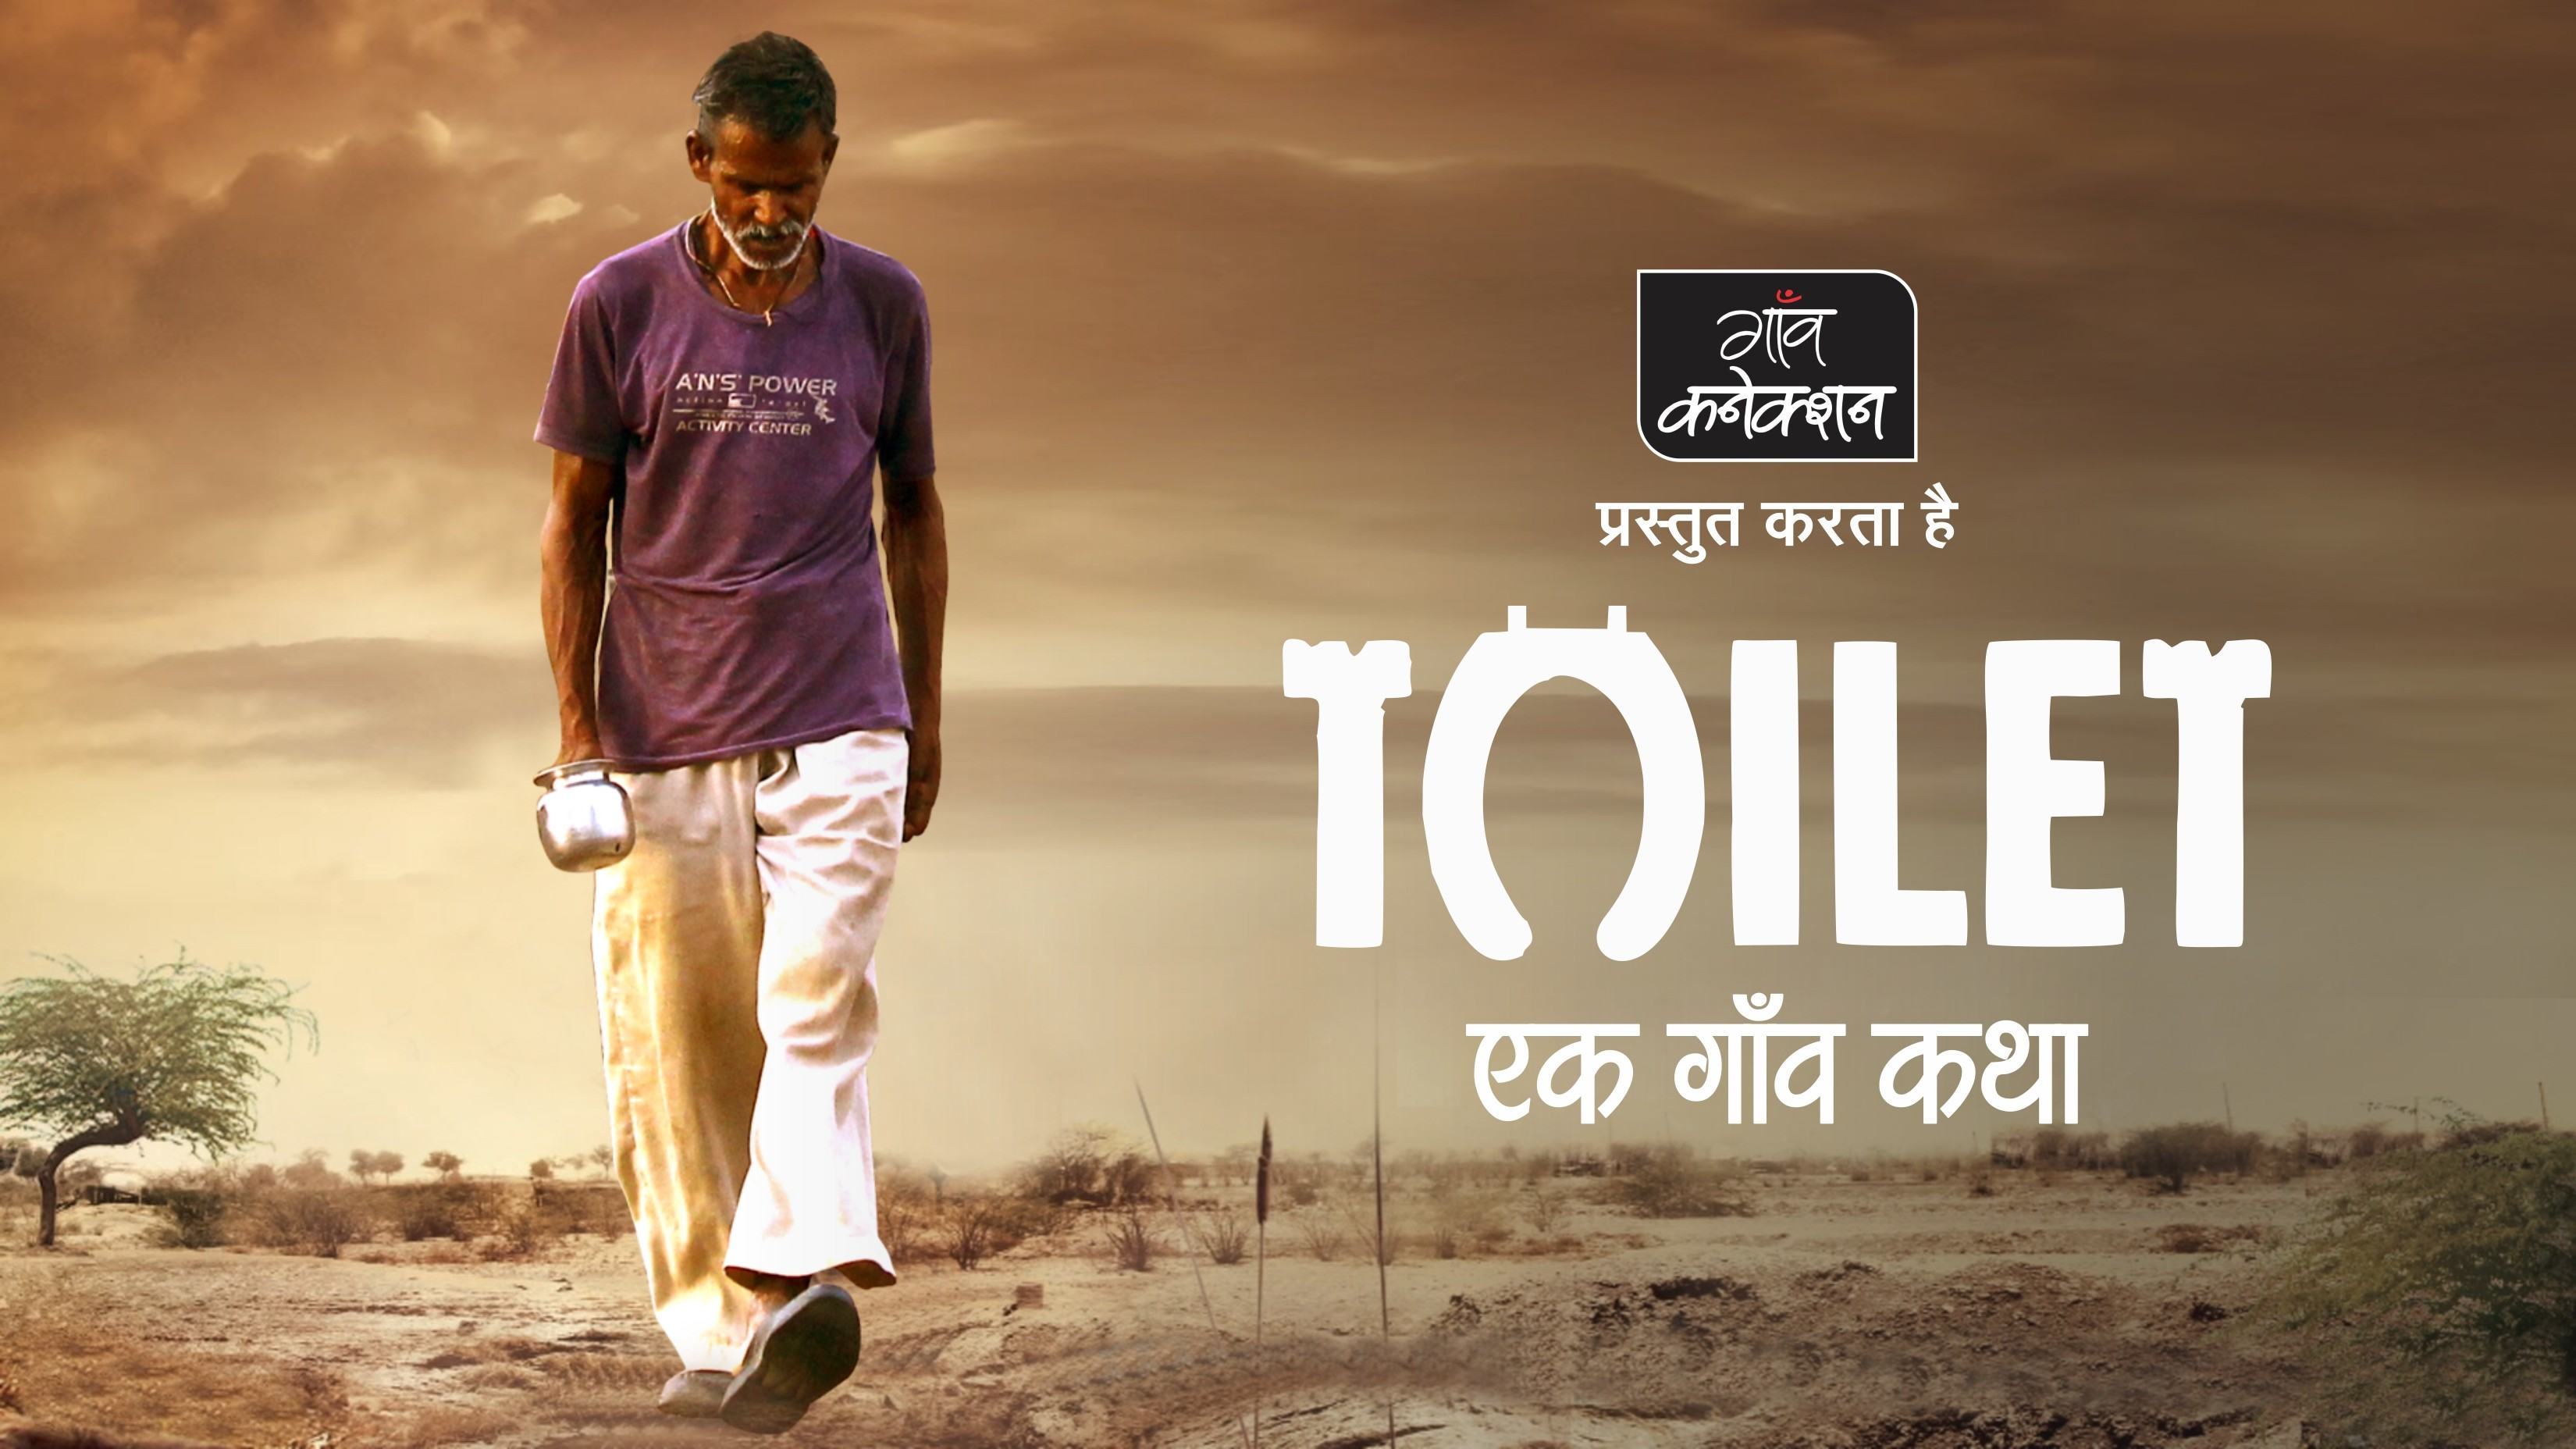 टॉयलेट एक प्रेम कथा: अक्षय की फिल्म का ट्रेलर तो आपने देख लिया,  शौचालय पर पूरी फिल्म हम आपको दिखाते हैं 